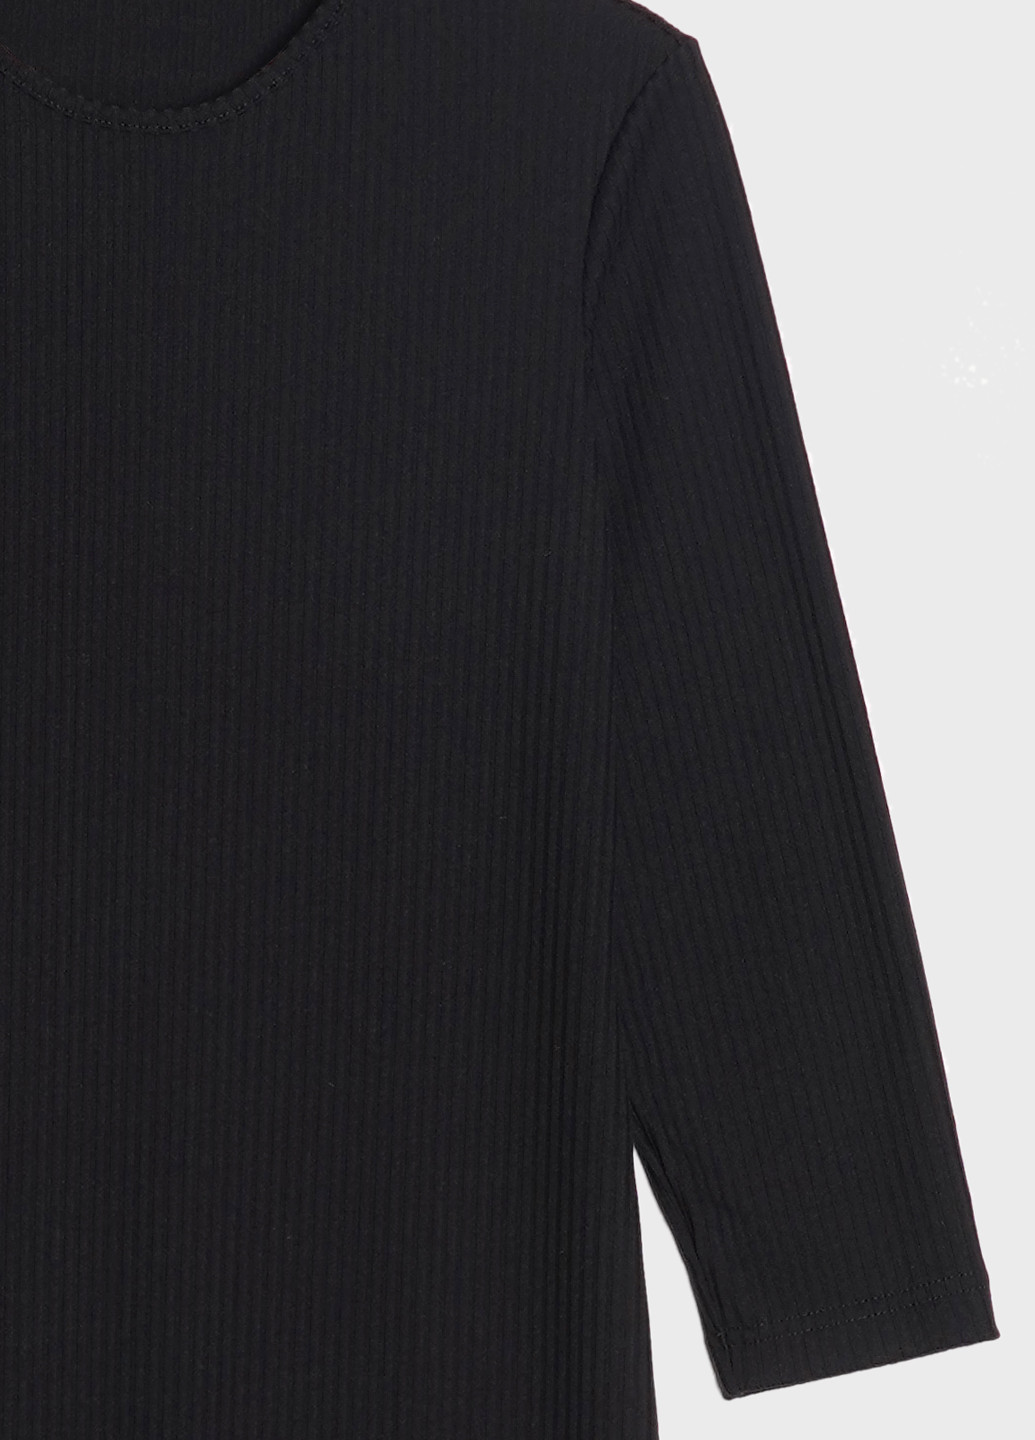 Черное кэжуал платье женское трикотажное длинное с рукавом 3/4 и разрезом KASTA design однотонное